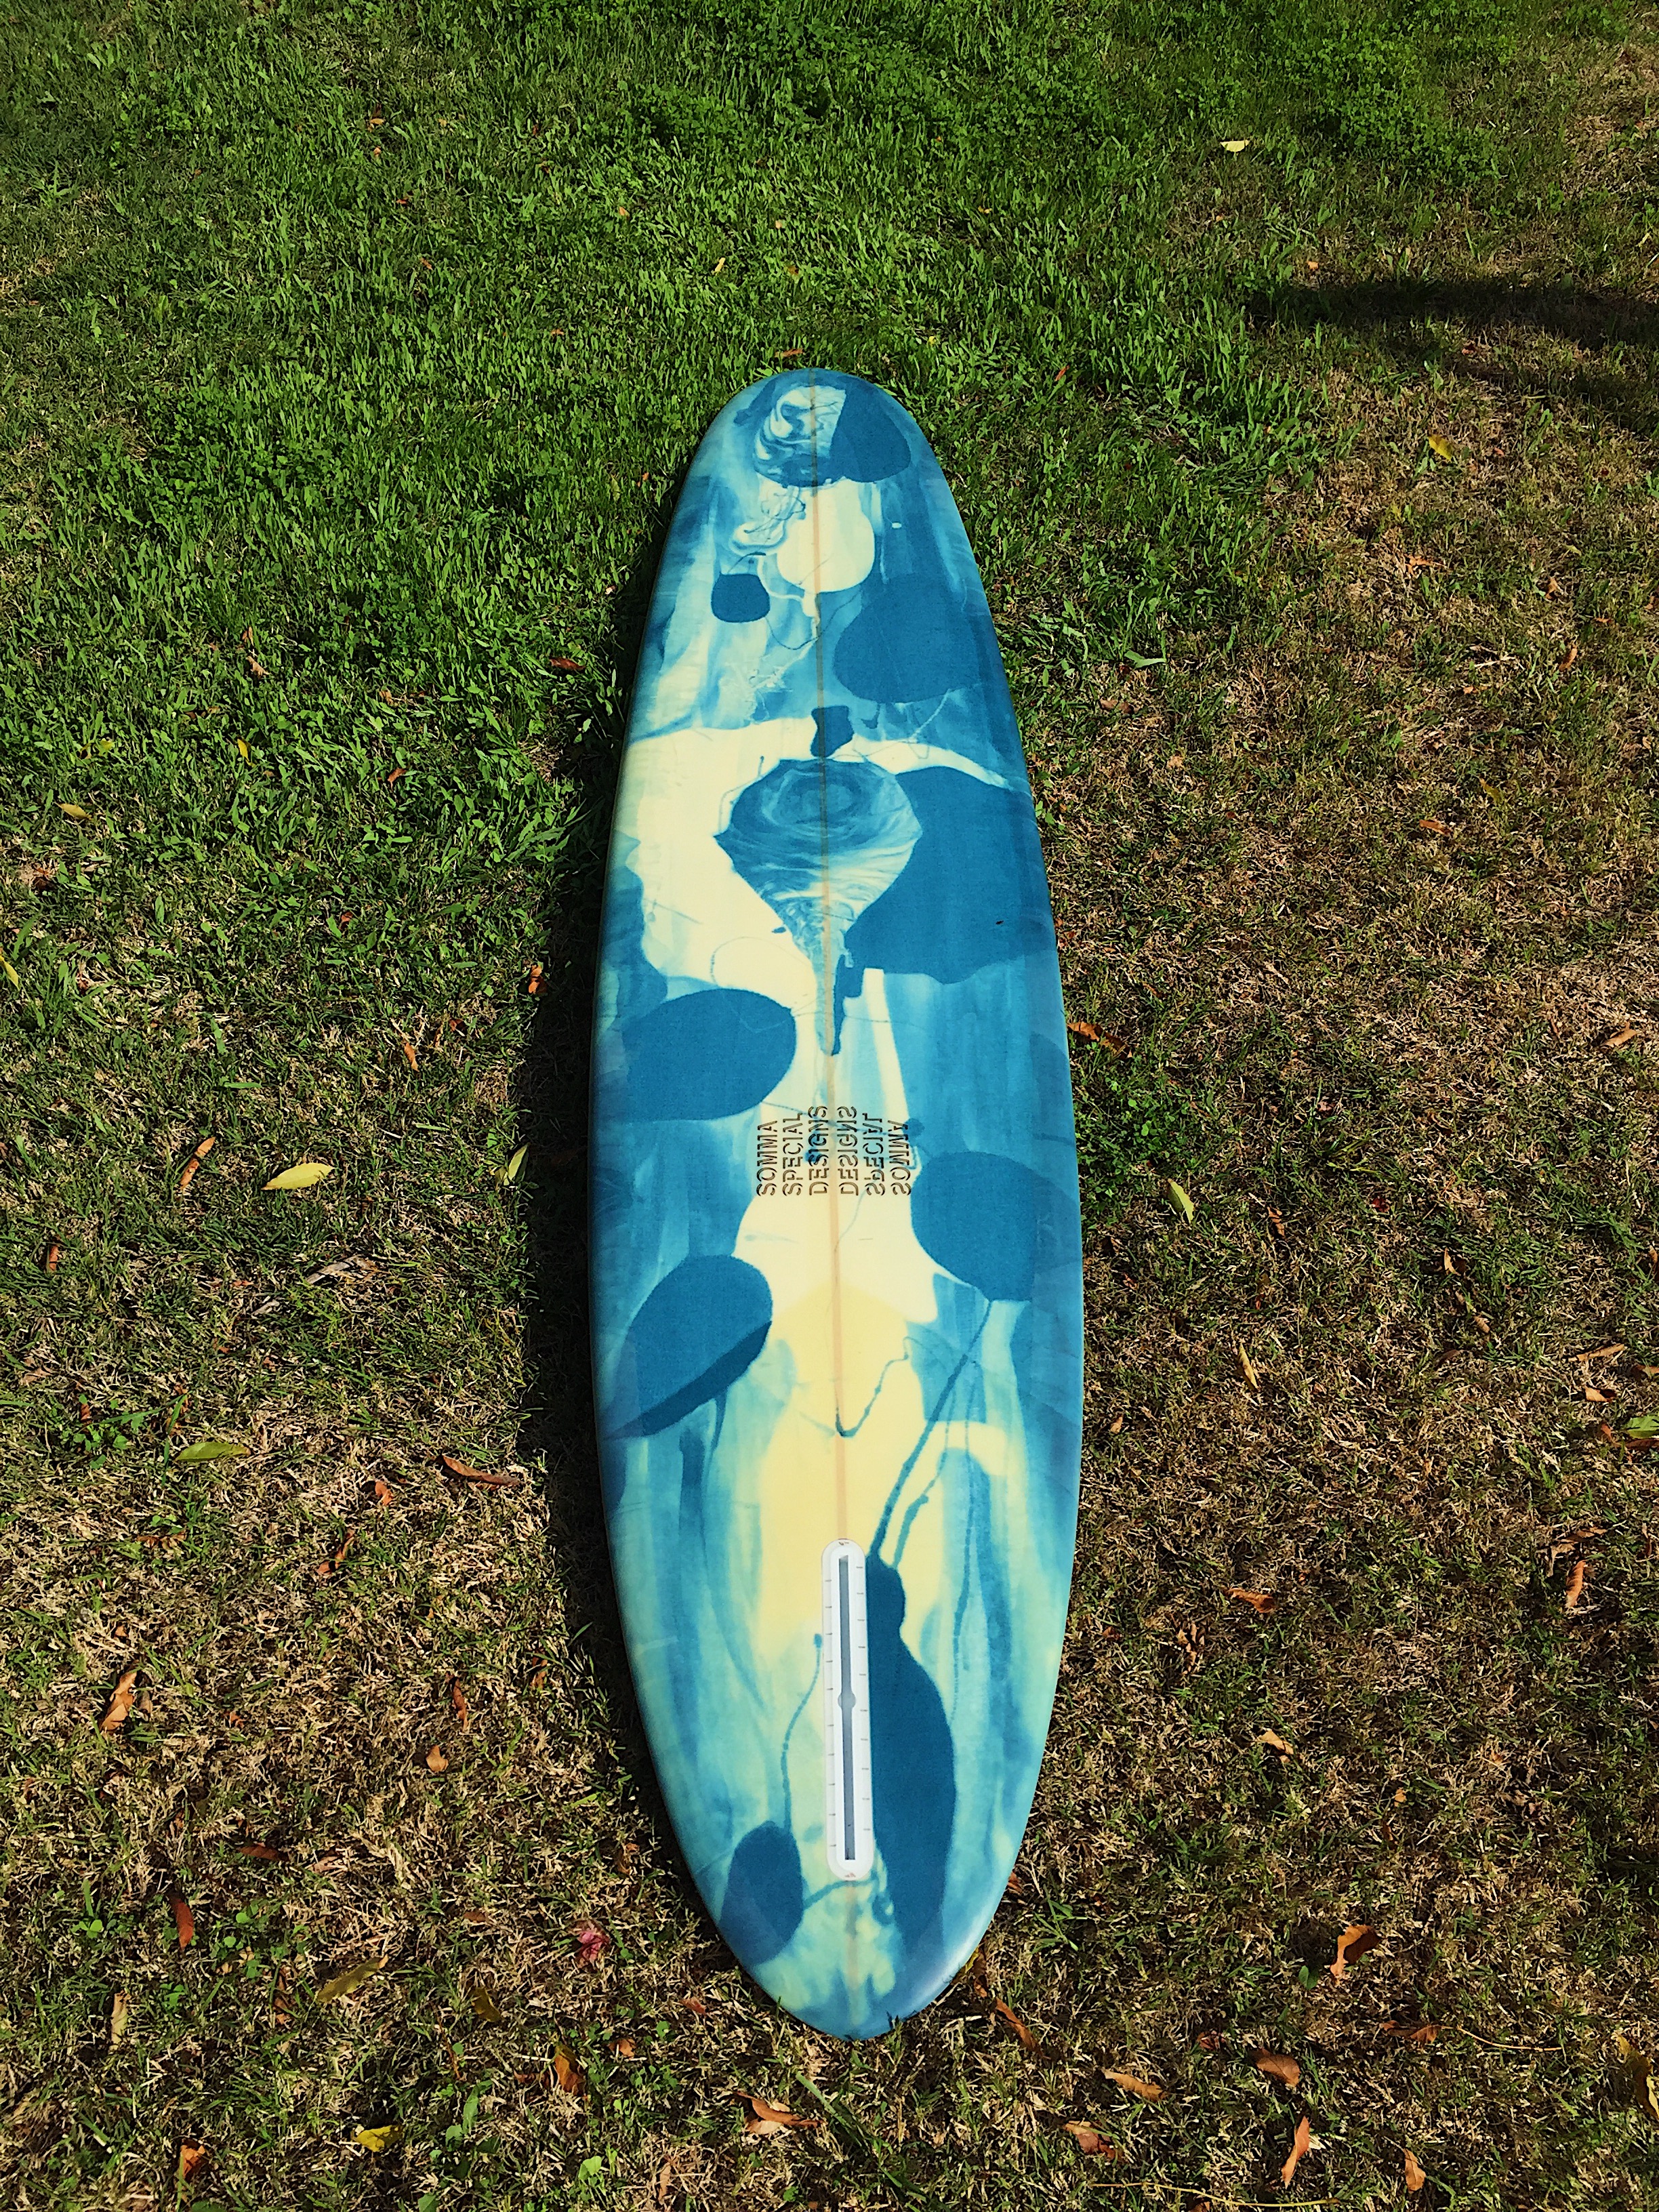 Custom hand shaped Cochon longboard surfboard by shaper Shea Somma